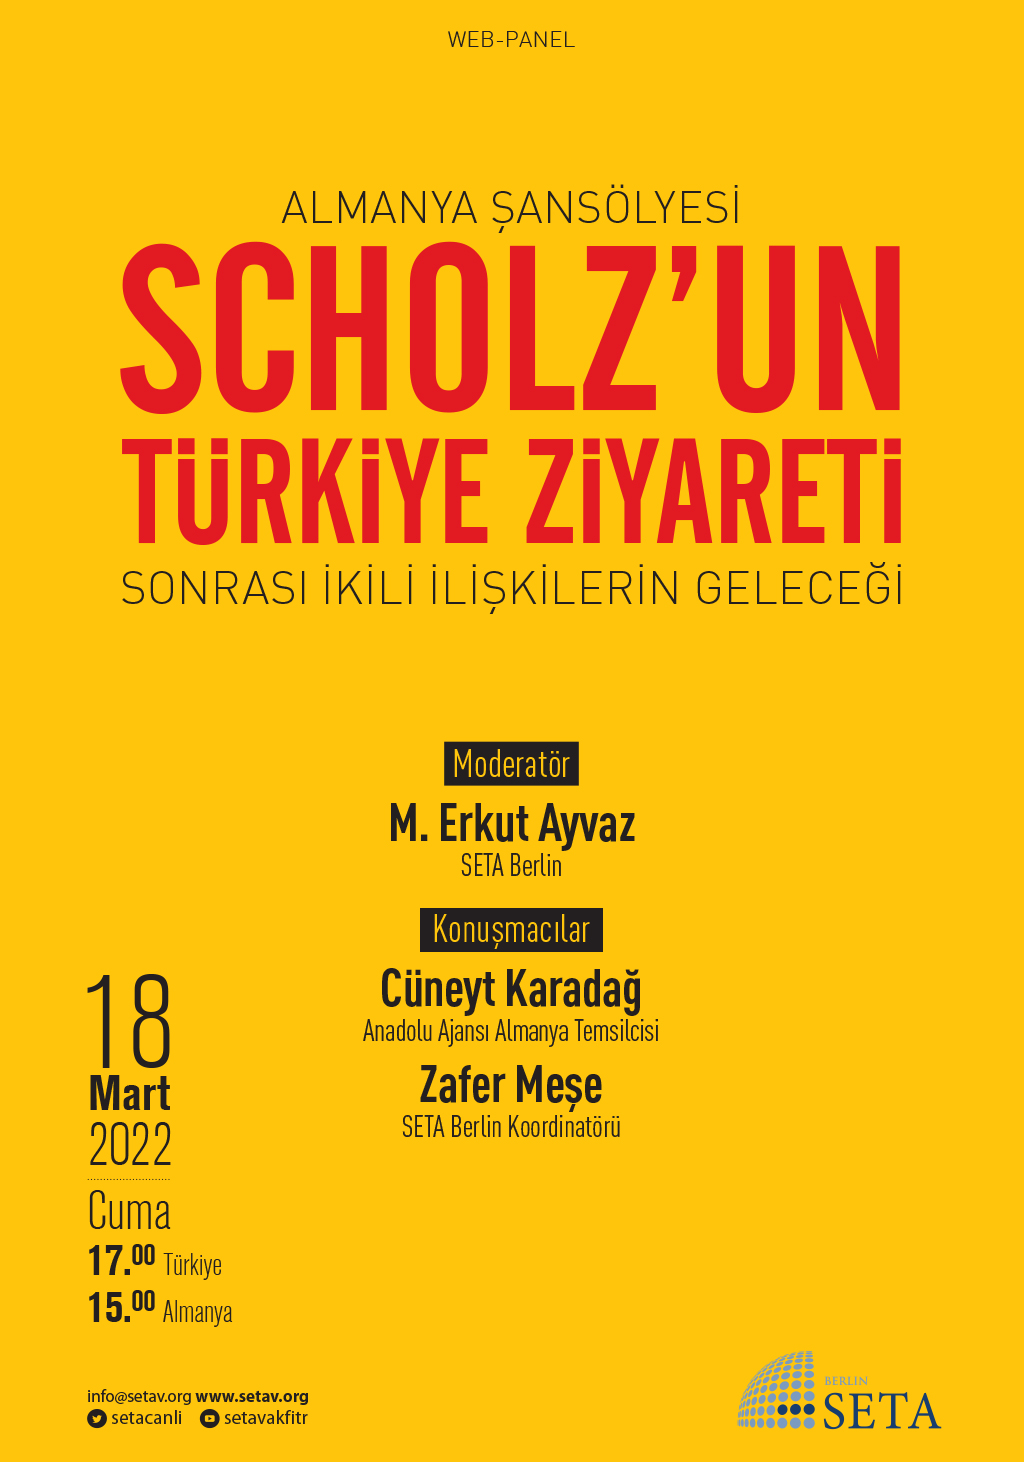 Web Panel Almanya Şansölyesi Scholz'un Türkiye Ziyareti Sonrası İkili İlişkilerin